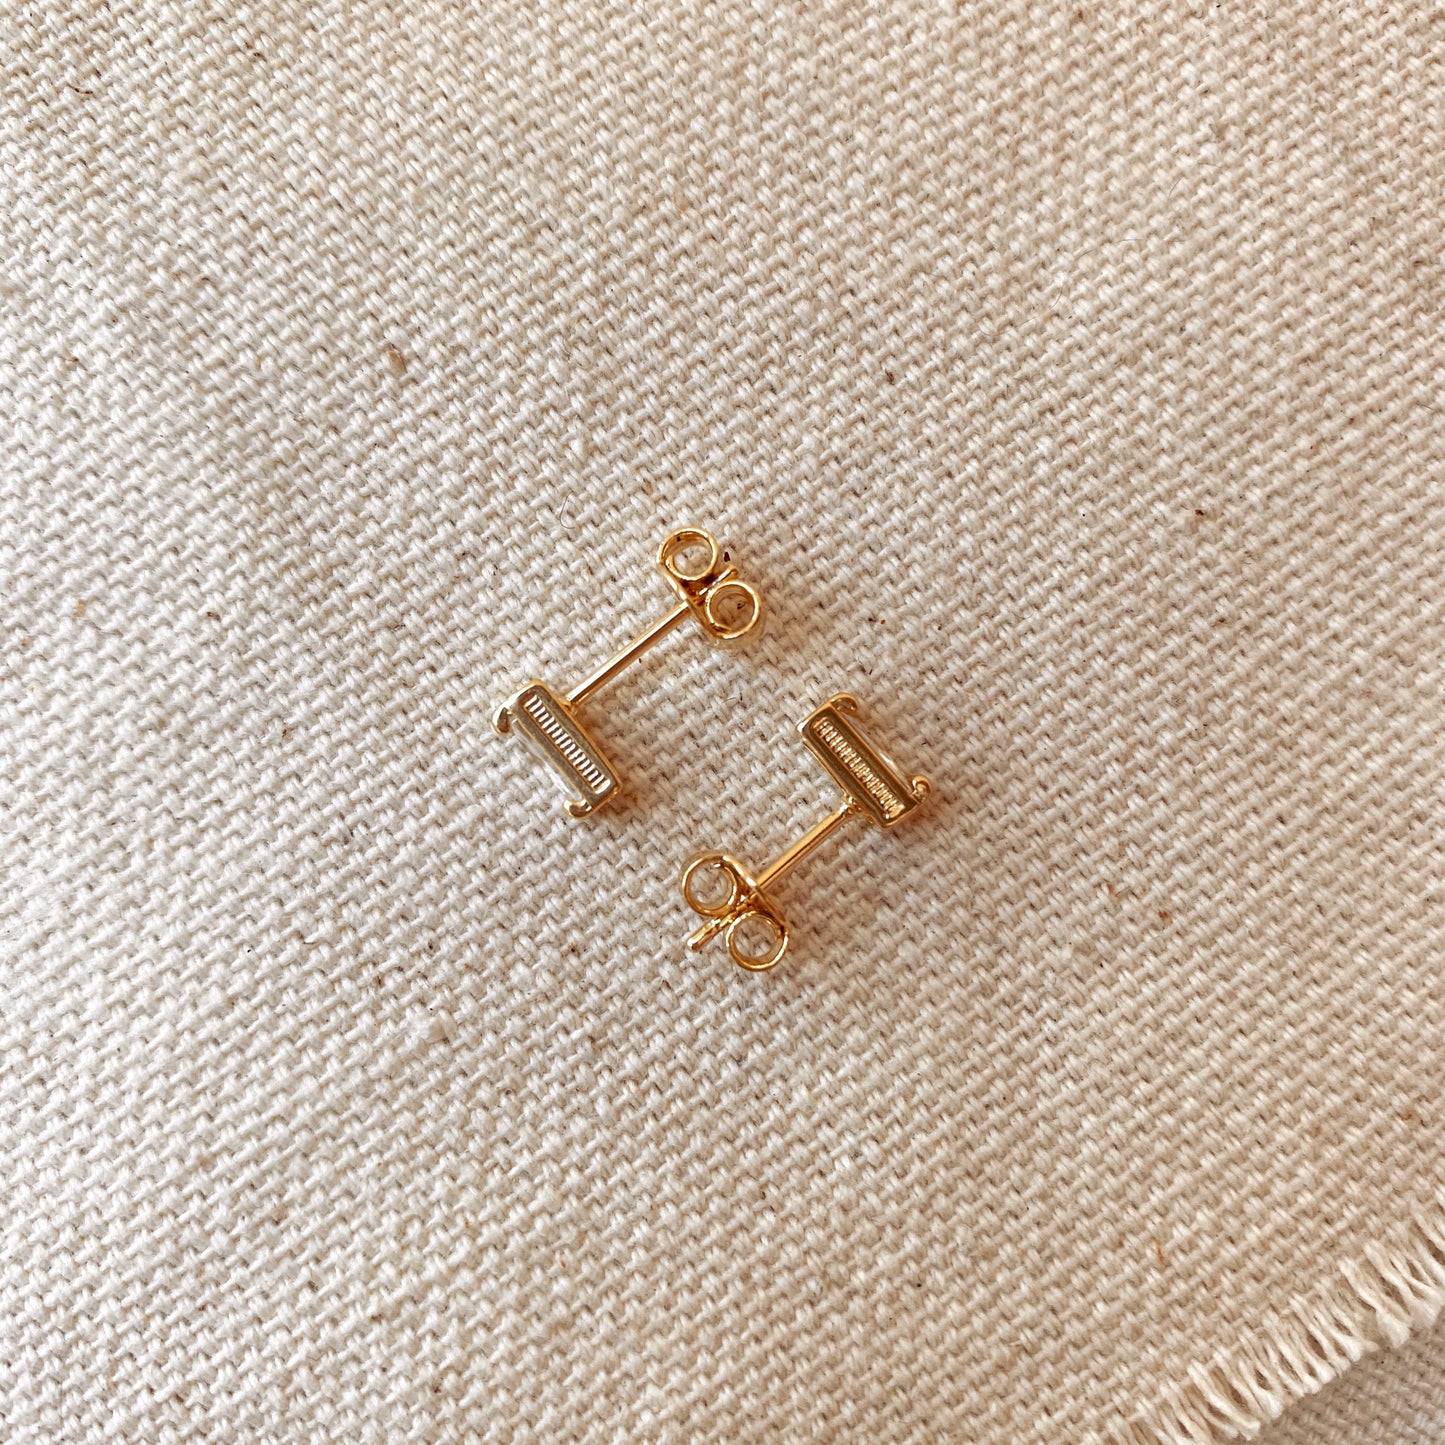 GoldFi Cubic Zirconia Baguette Stud Earrings In Gold Filled